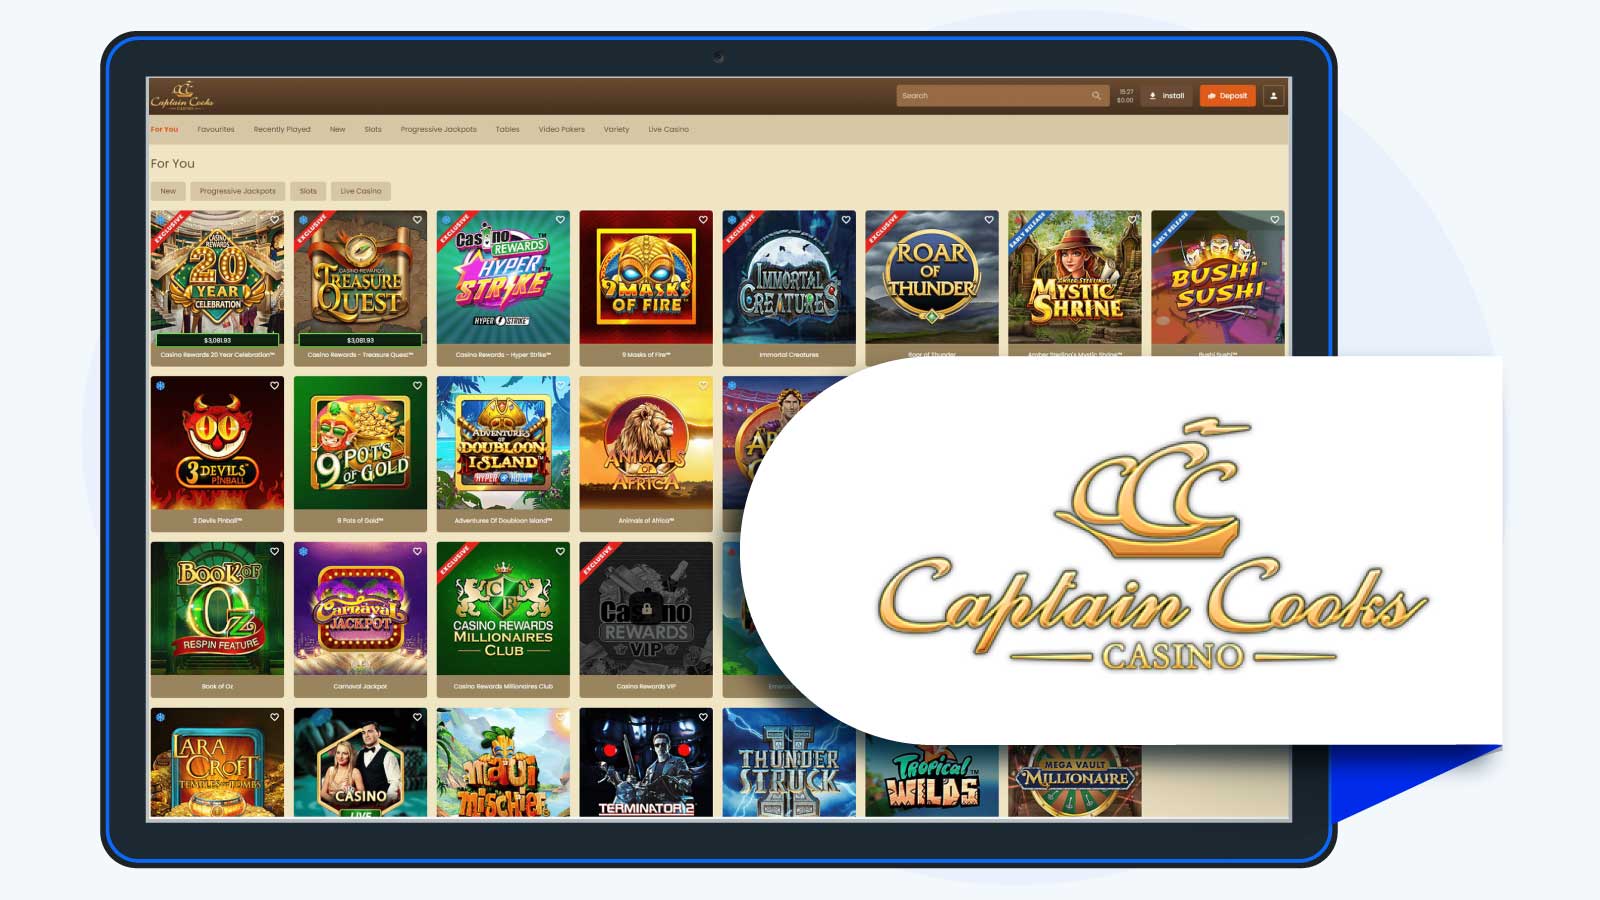 Captain Cooks Casino - NZ Players' Favorite Pragmatic Play Casino